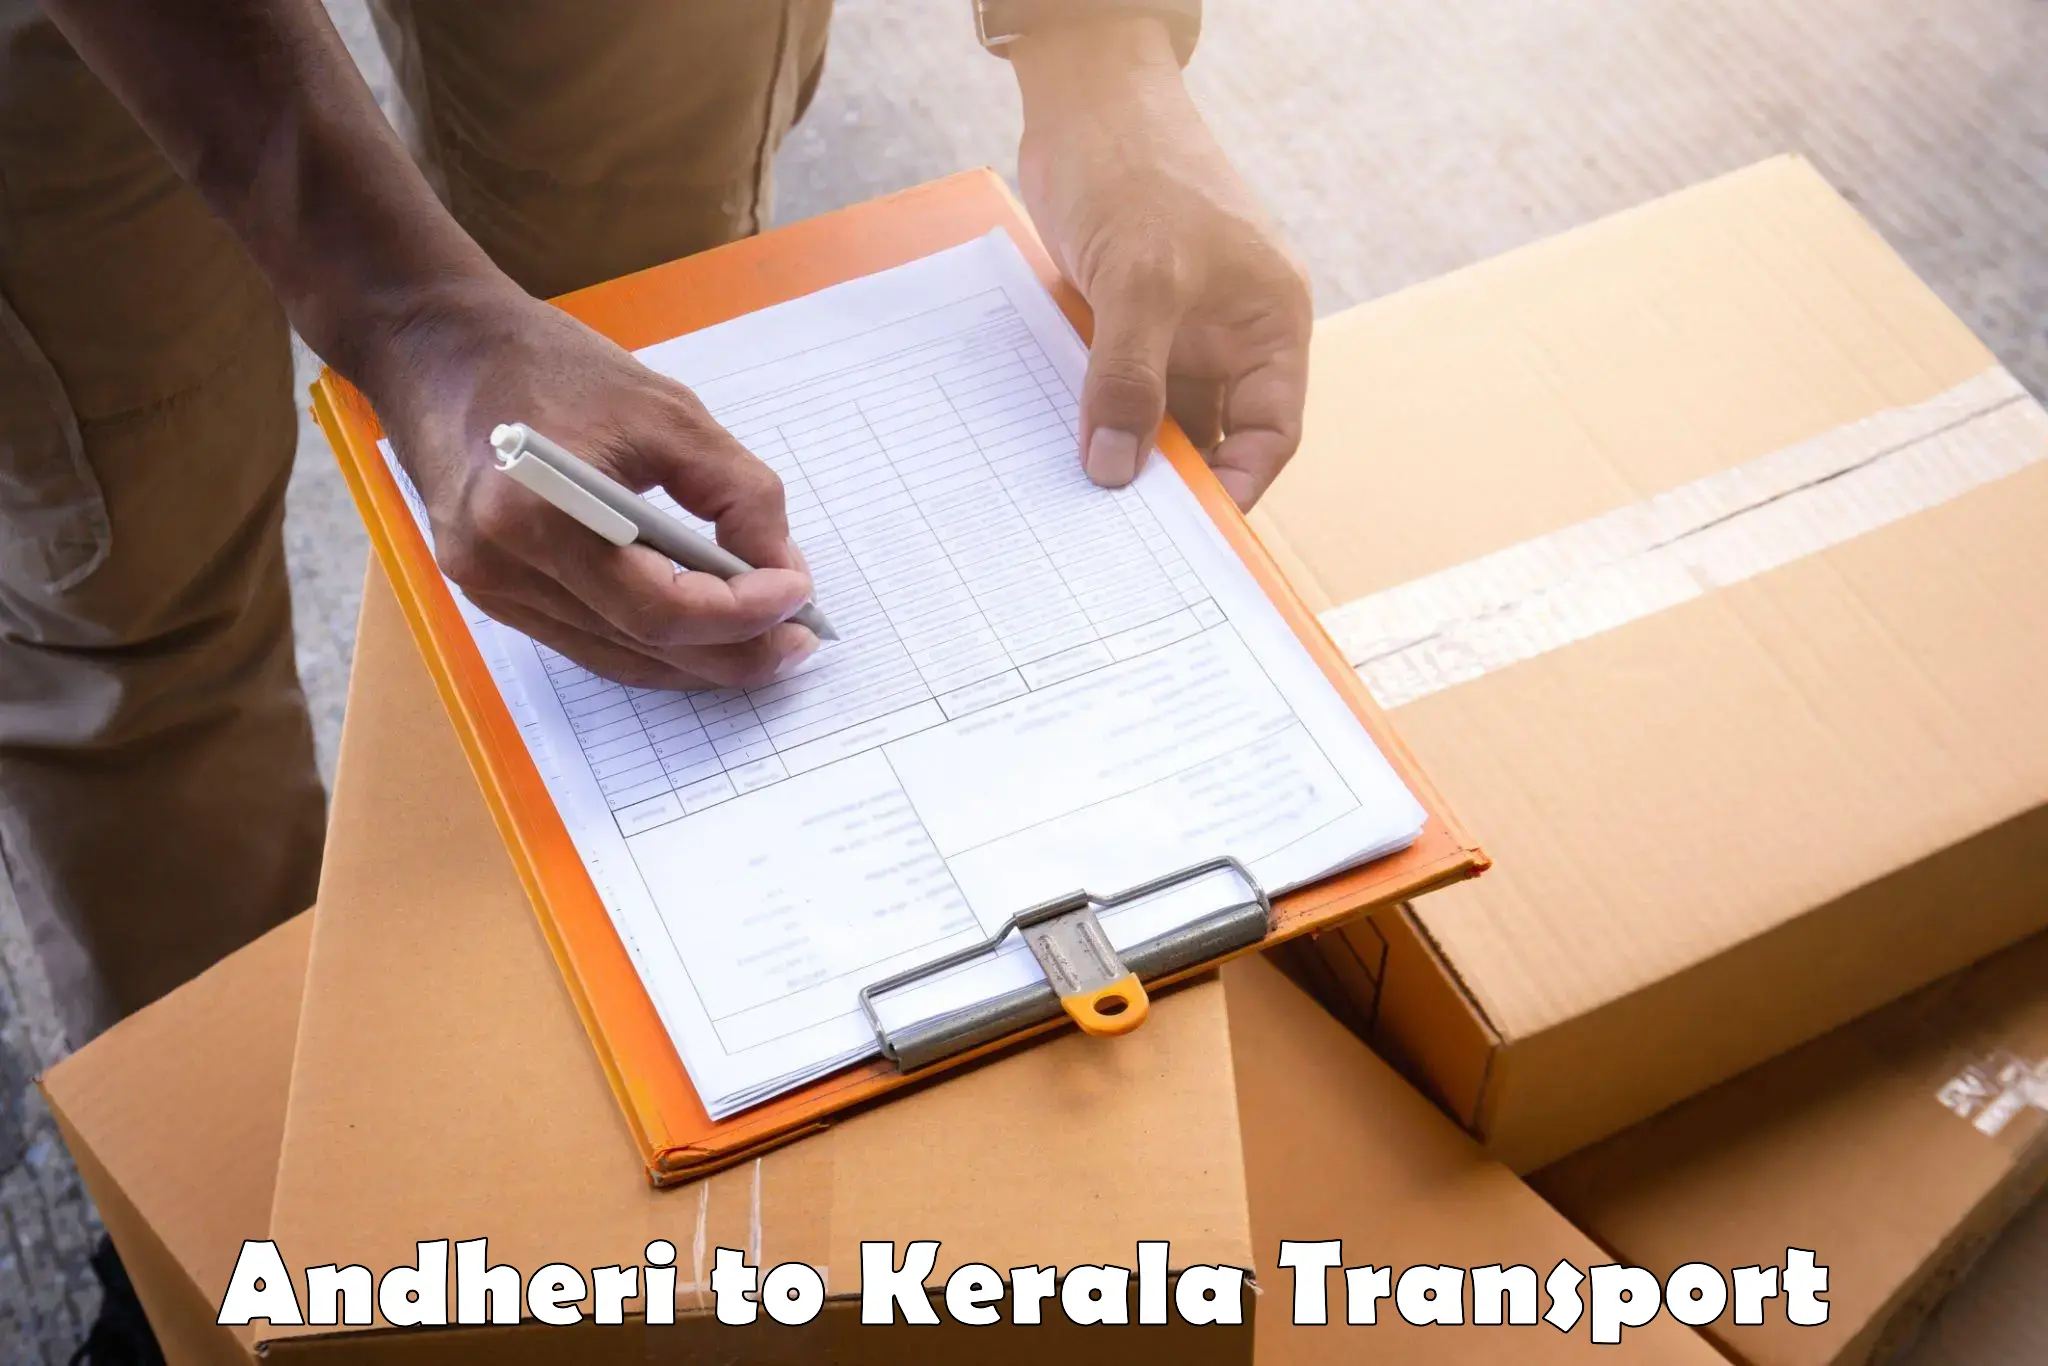 Bike transport service Andheri to Kerala